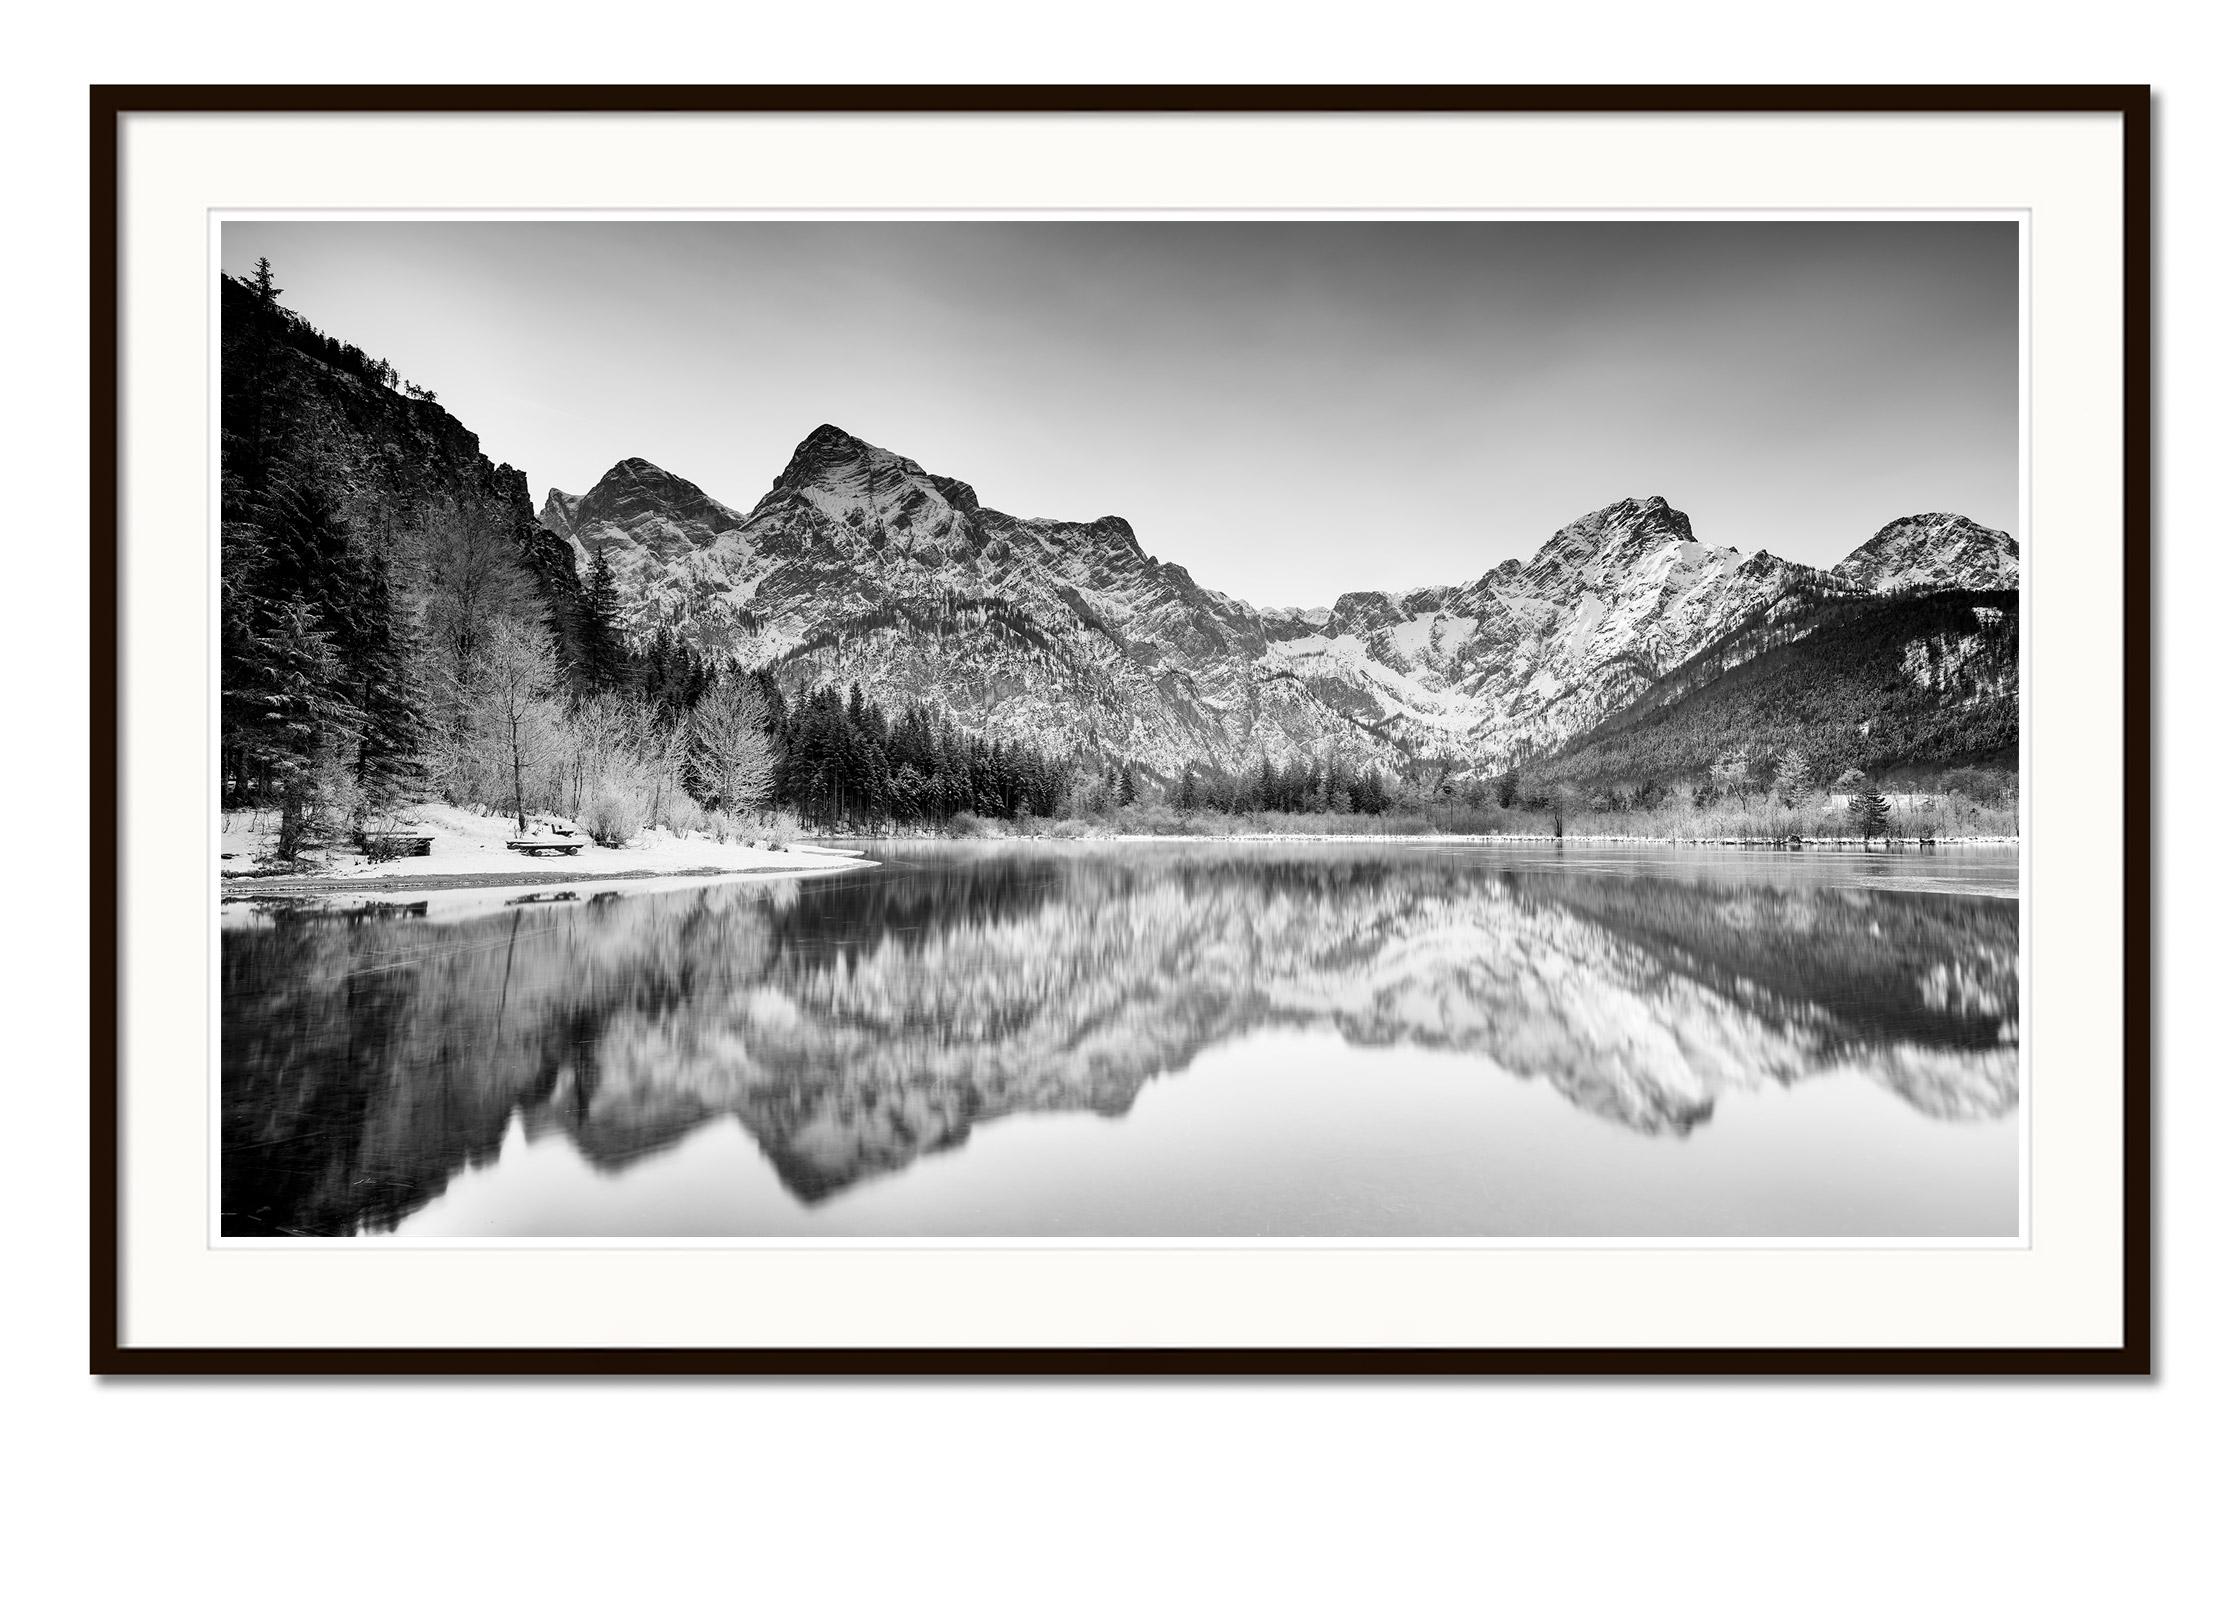 Panorama d'art en noir et blanc, photographie de paysage à longue exposition. Panorama hivernal au bord d'un lac avec montagnes, lac et beaux reflets dans l'eau, Almsee, Autriche. Épreuve à l'encre pigmentaire d'archives, édition de 8 exemplaires.